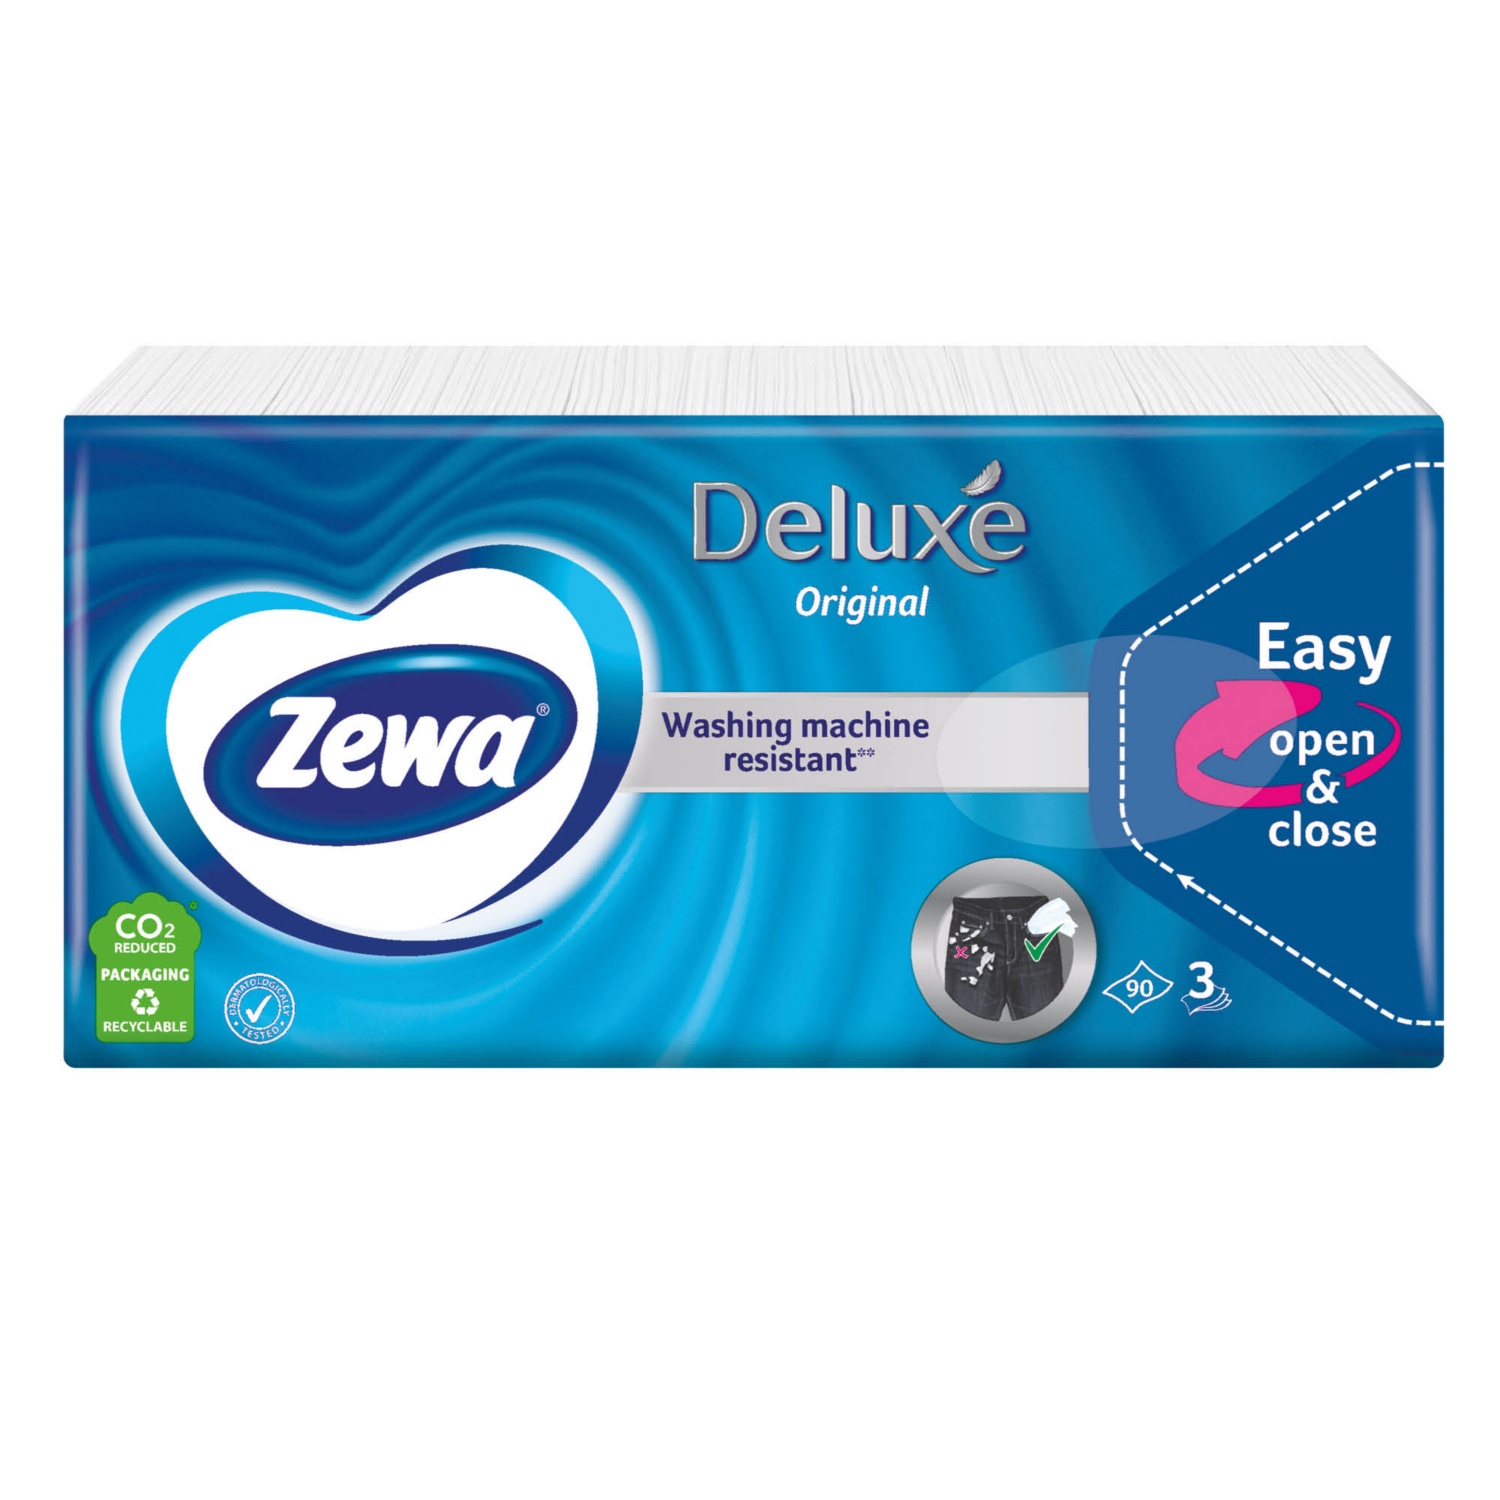 ZEWA Deluxe papír zsebkendő, 90 darab